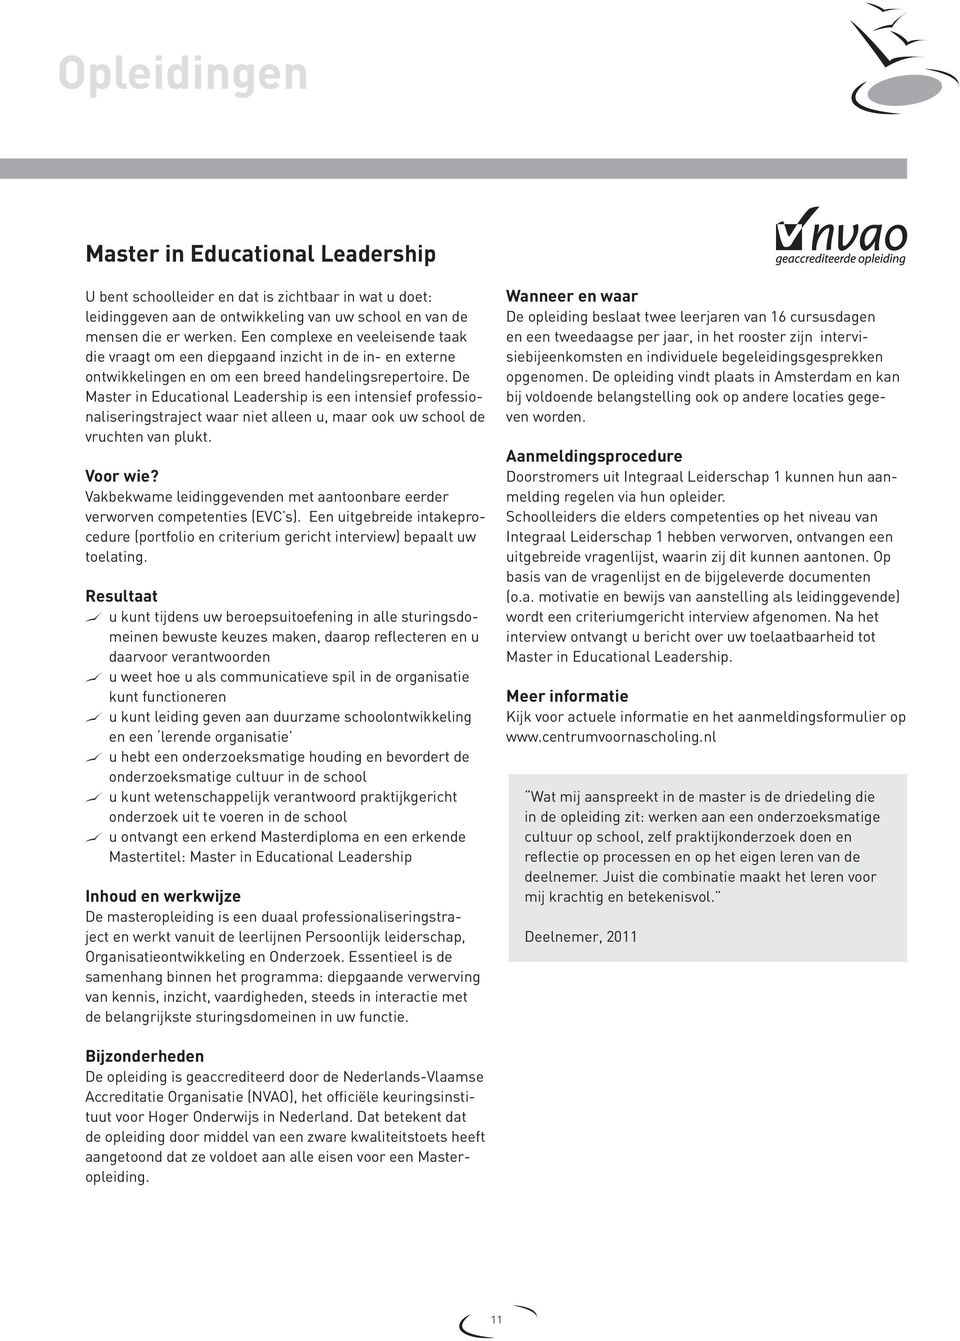 De Master in Educational Leadership is een intensief professionaliseringstraject waar niet alleen u, maar ook uw school de vruchten van plukt. Voor wie?